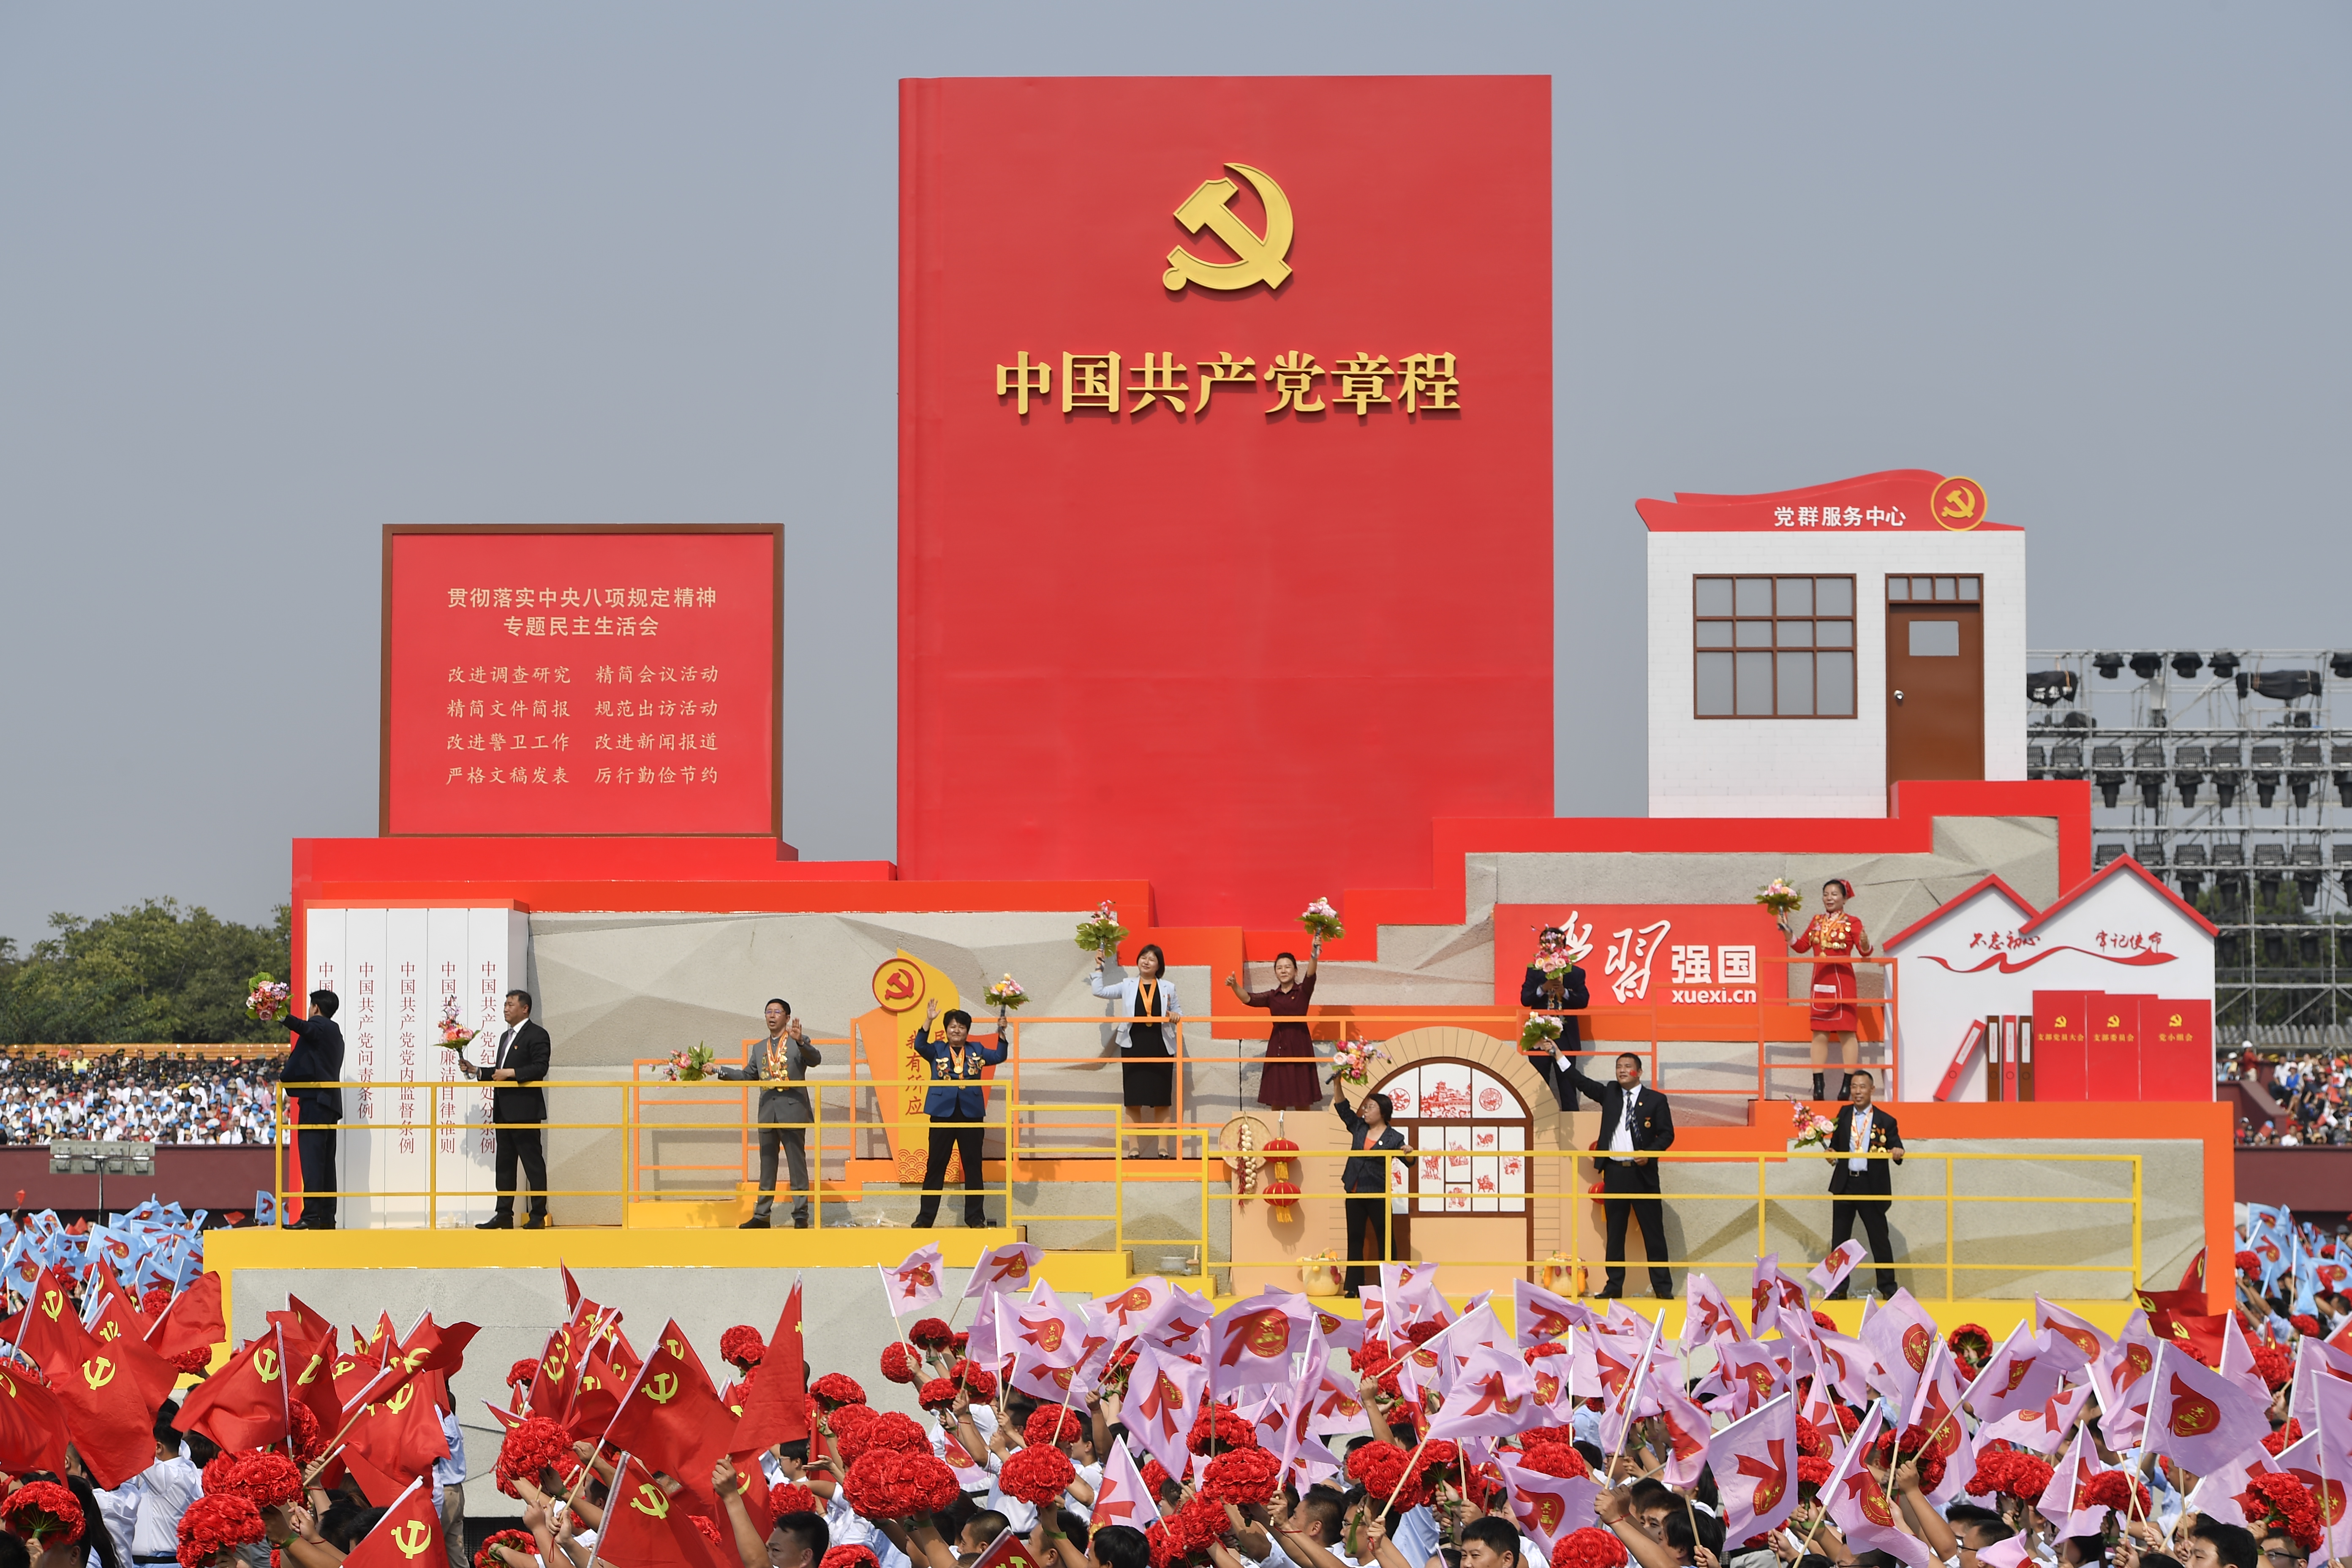 2019年10月1日上午，庆祝中华人民共和国成立70周年大会在北京天安门广场隆重举行。这是群众游行队伍中的“从严治党”方阵。